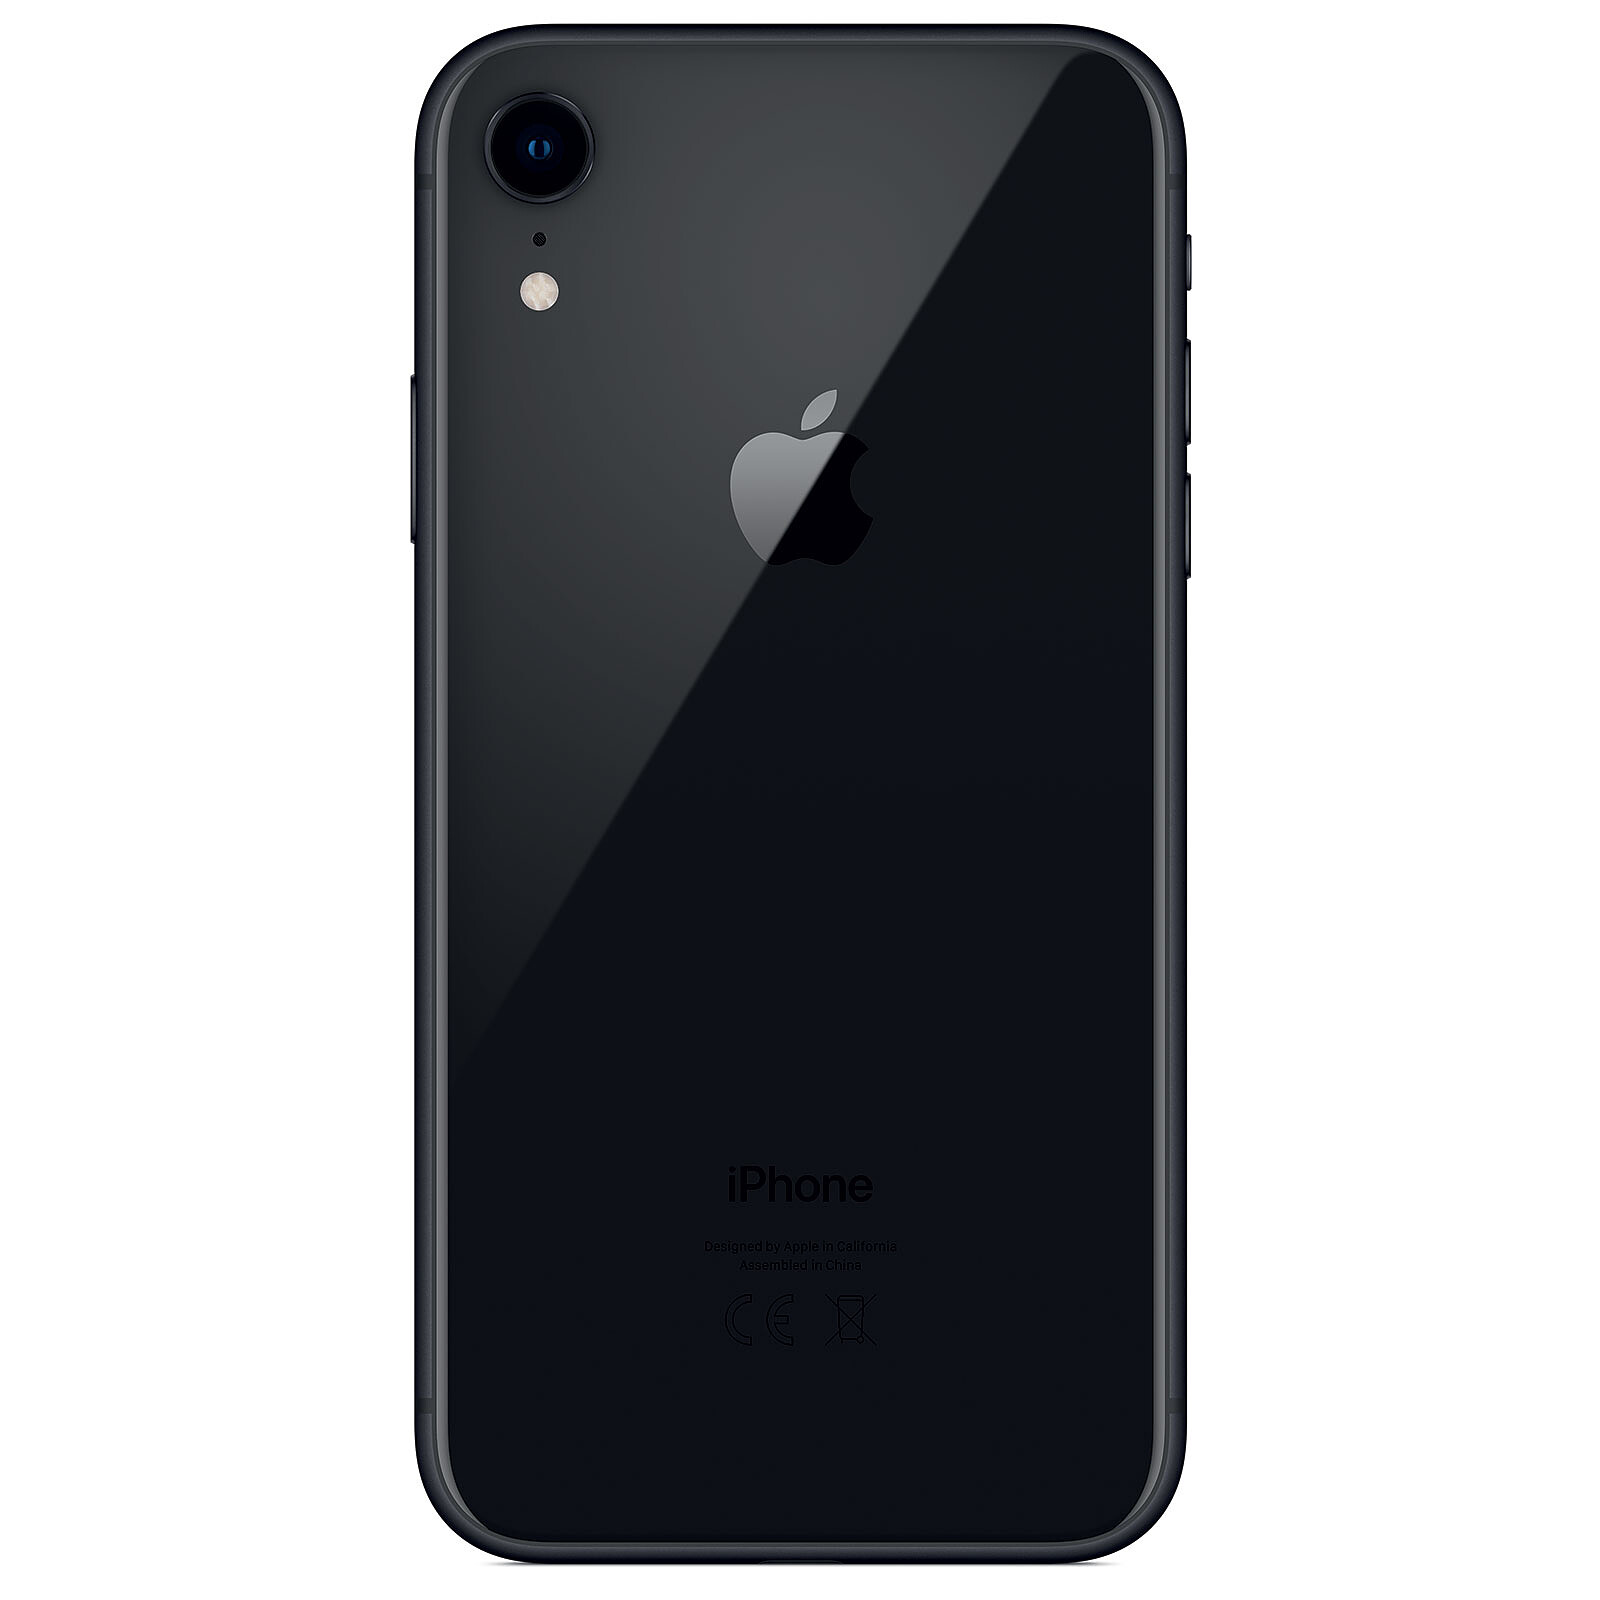 Bon plan Orange : l'iPhone XR reconditionné disponible à 129€